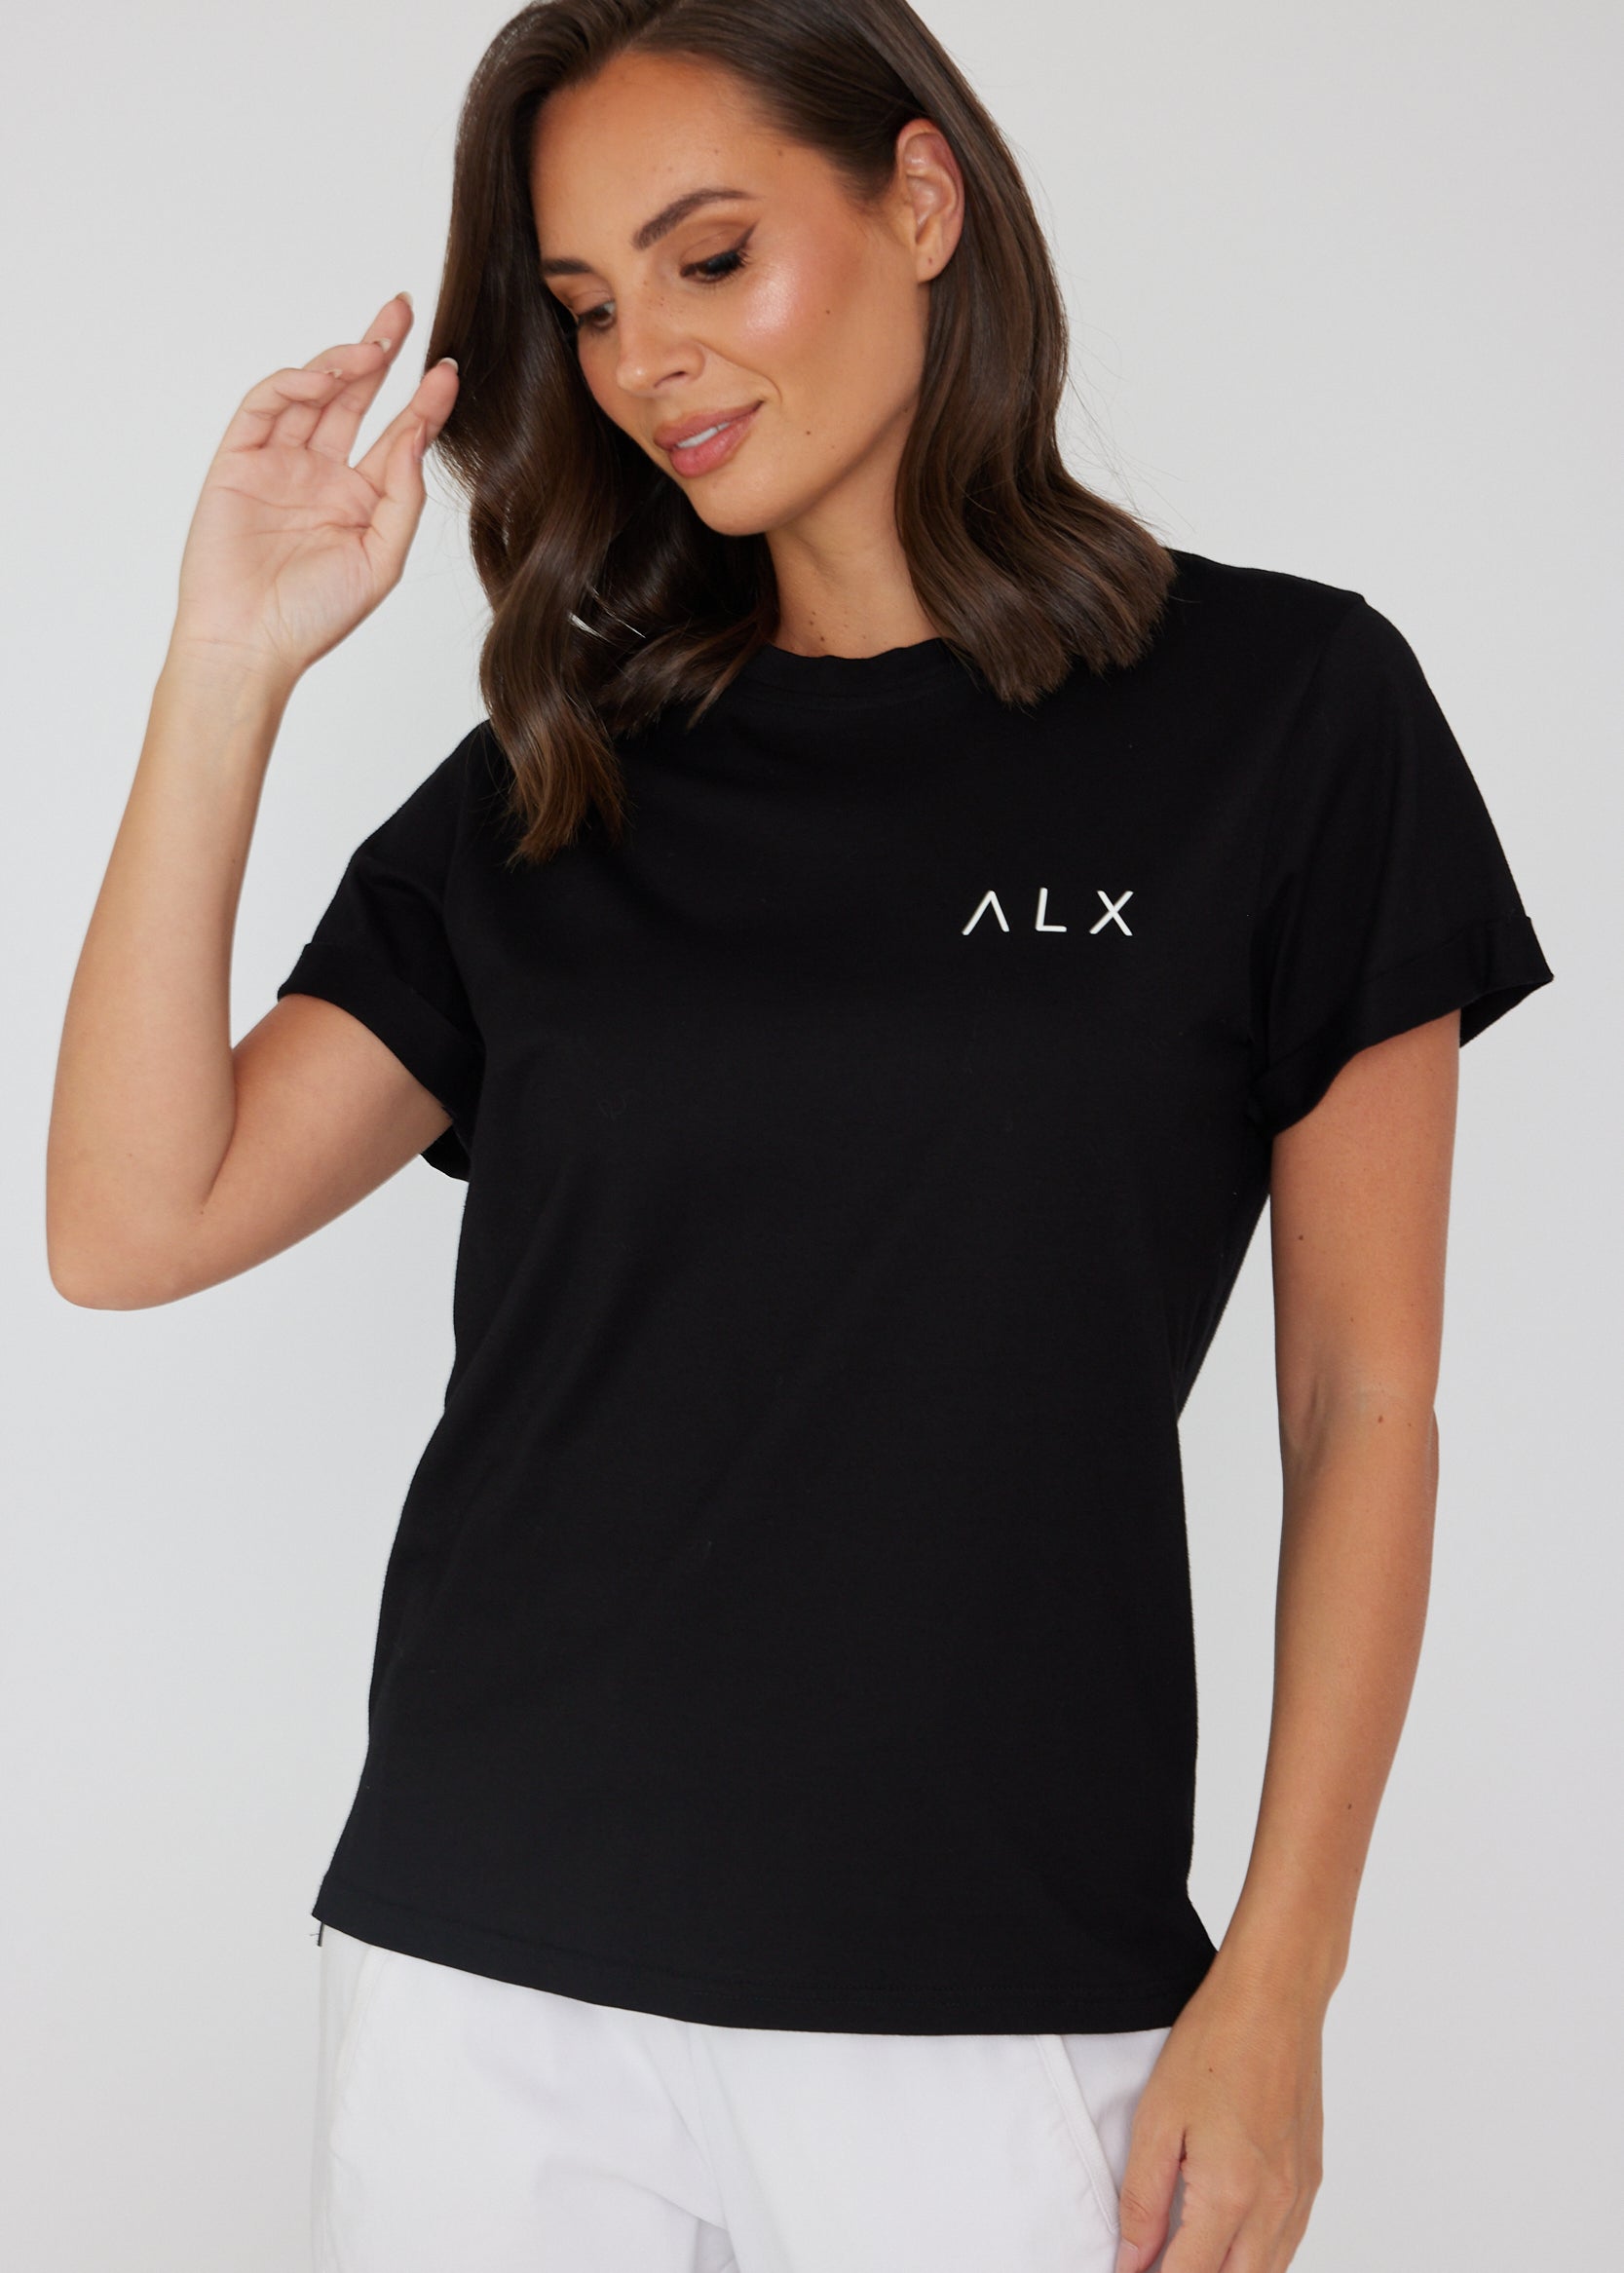 AlexandraALXCrewNeckCottonT-shirtBlack1.jpg